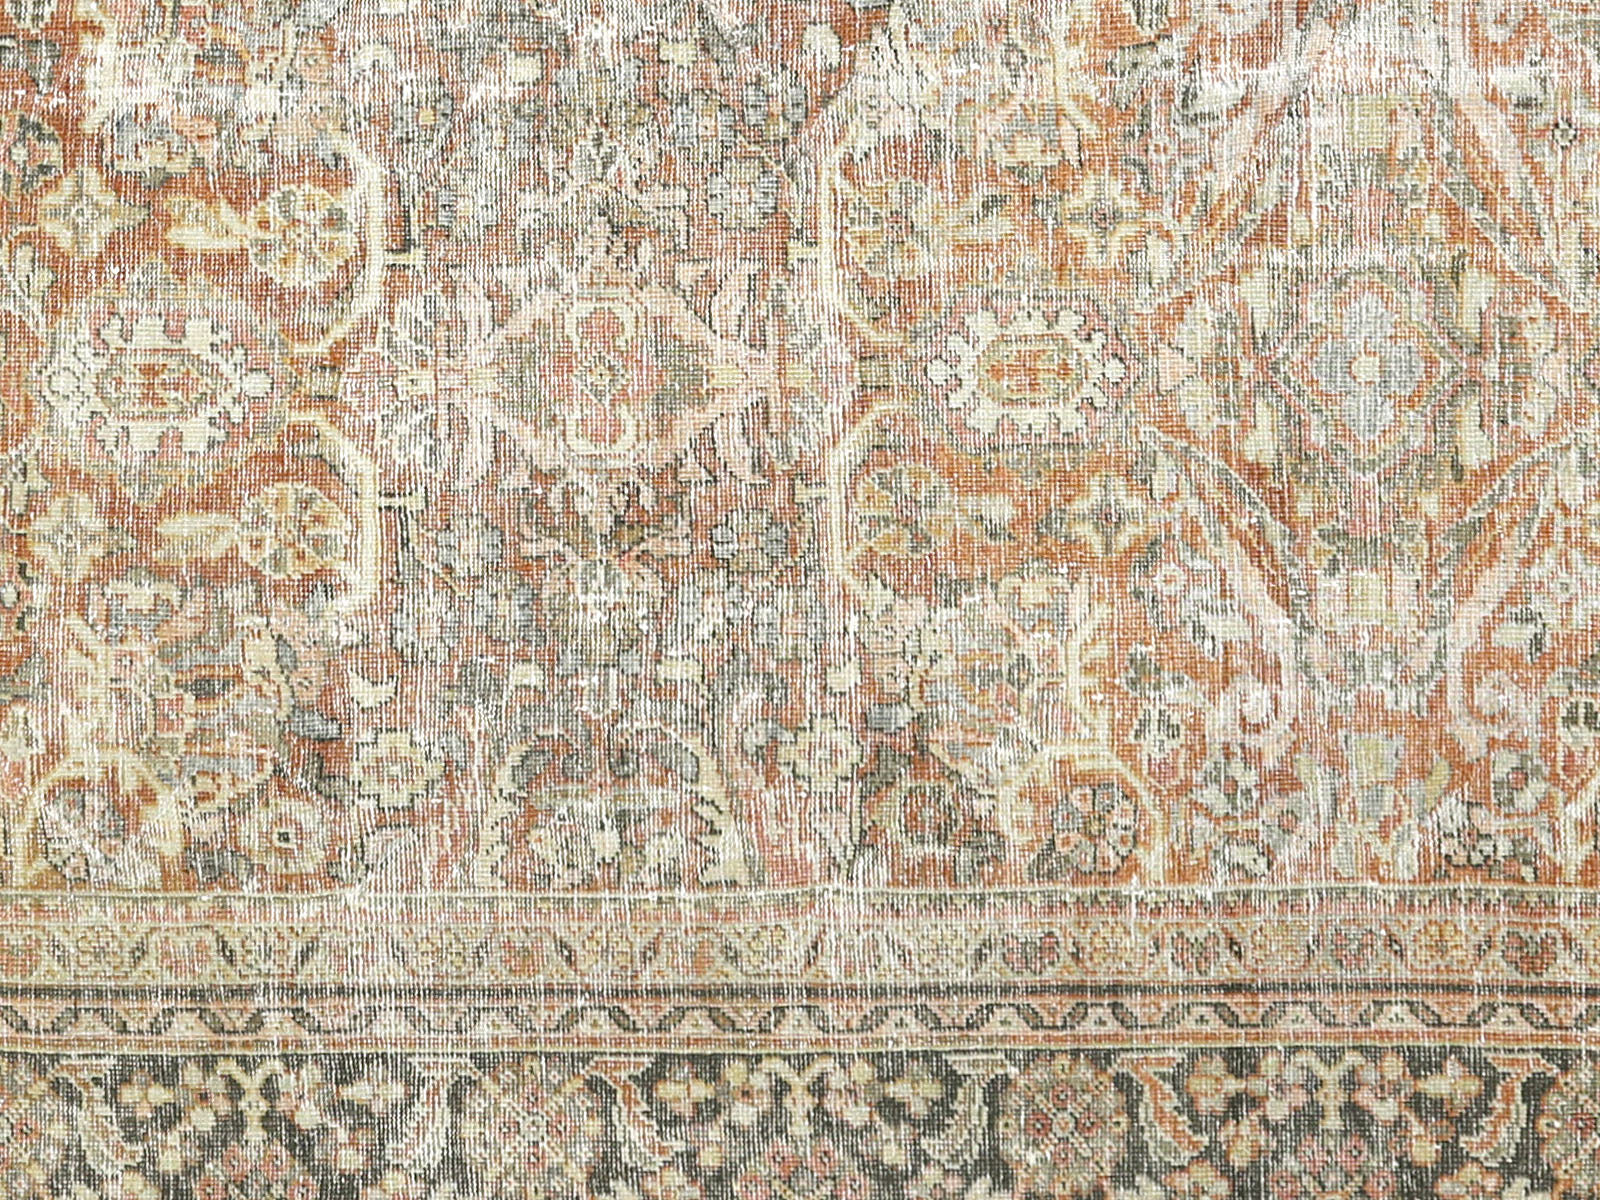 Antique Persian Mahal Rug - 10'5" x 10'3"